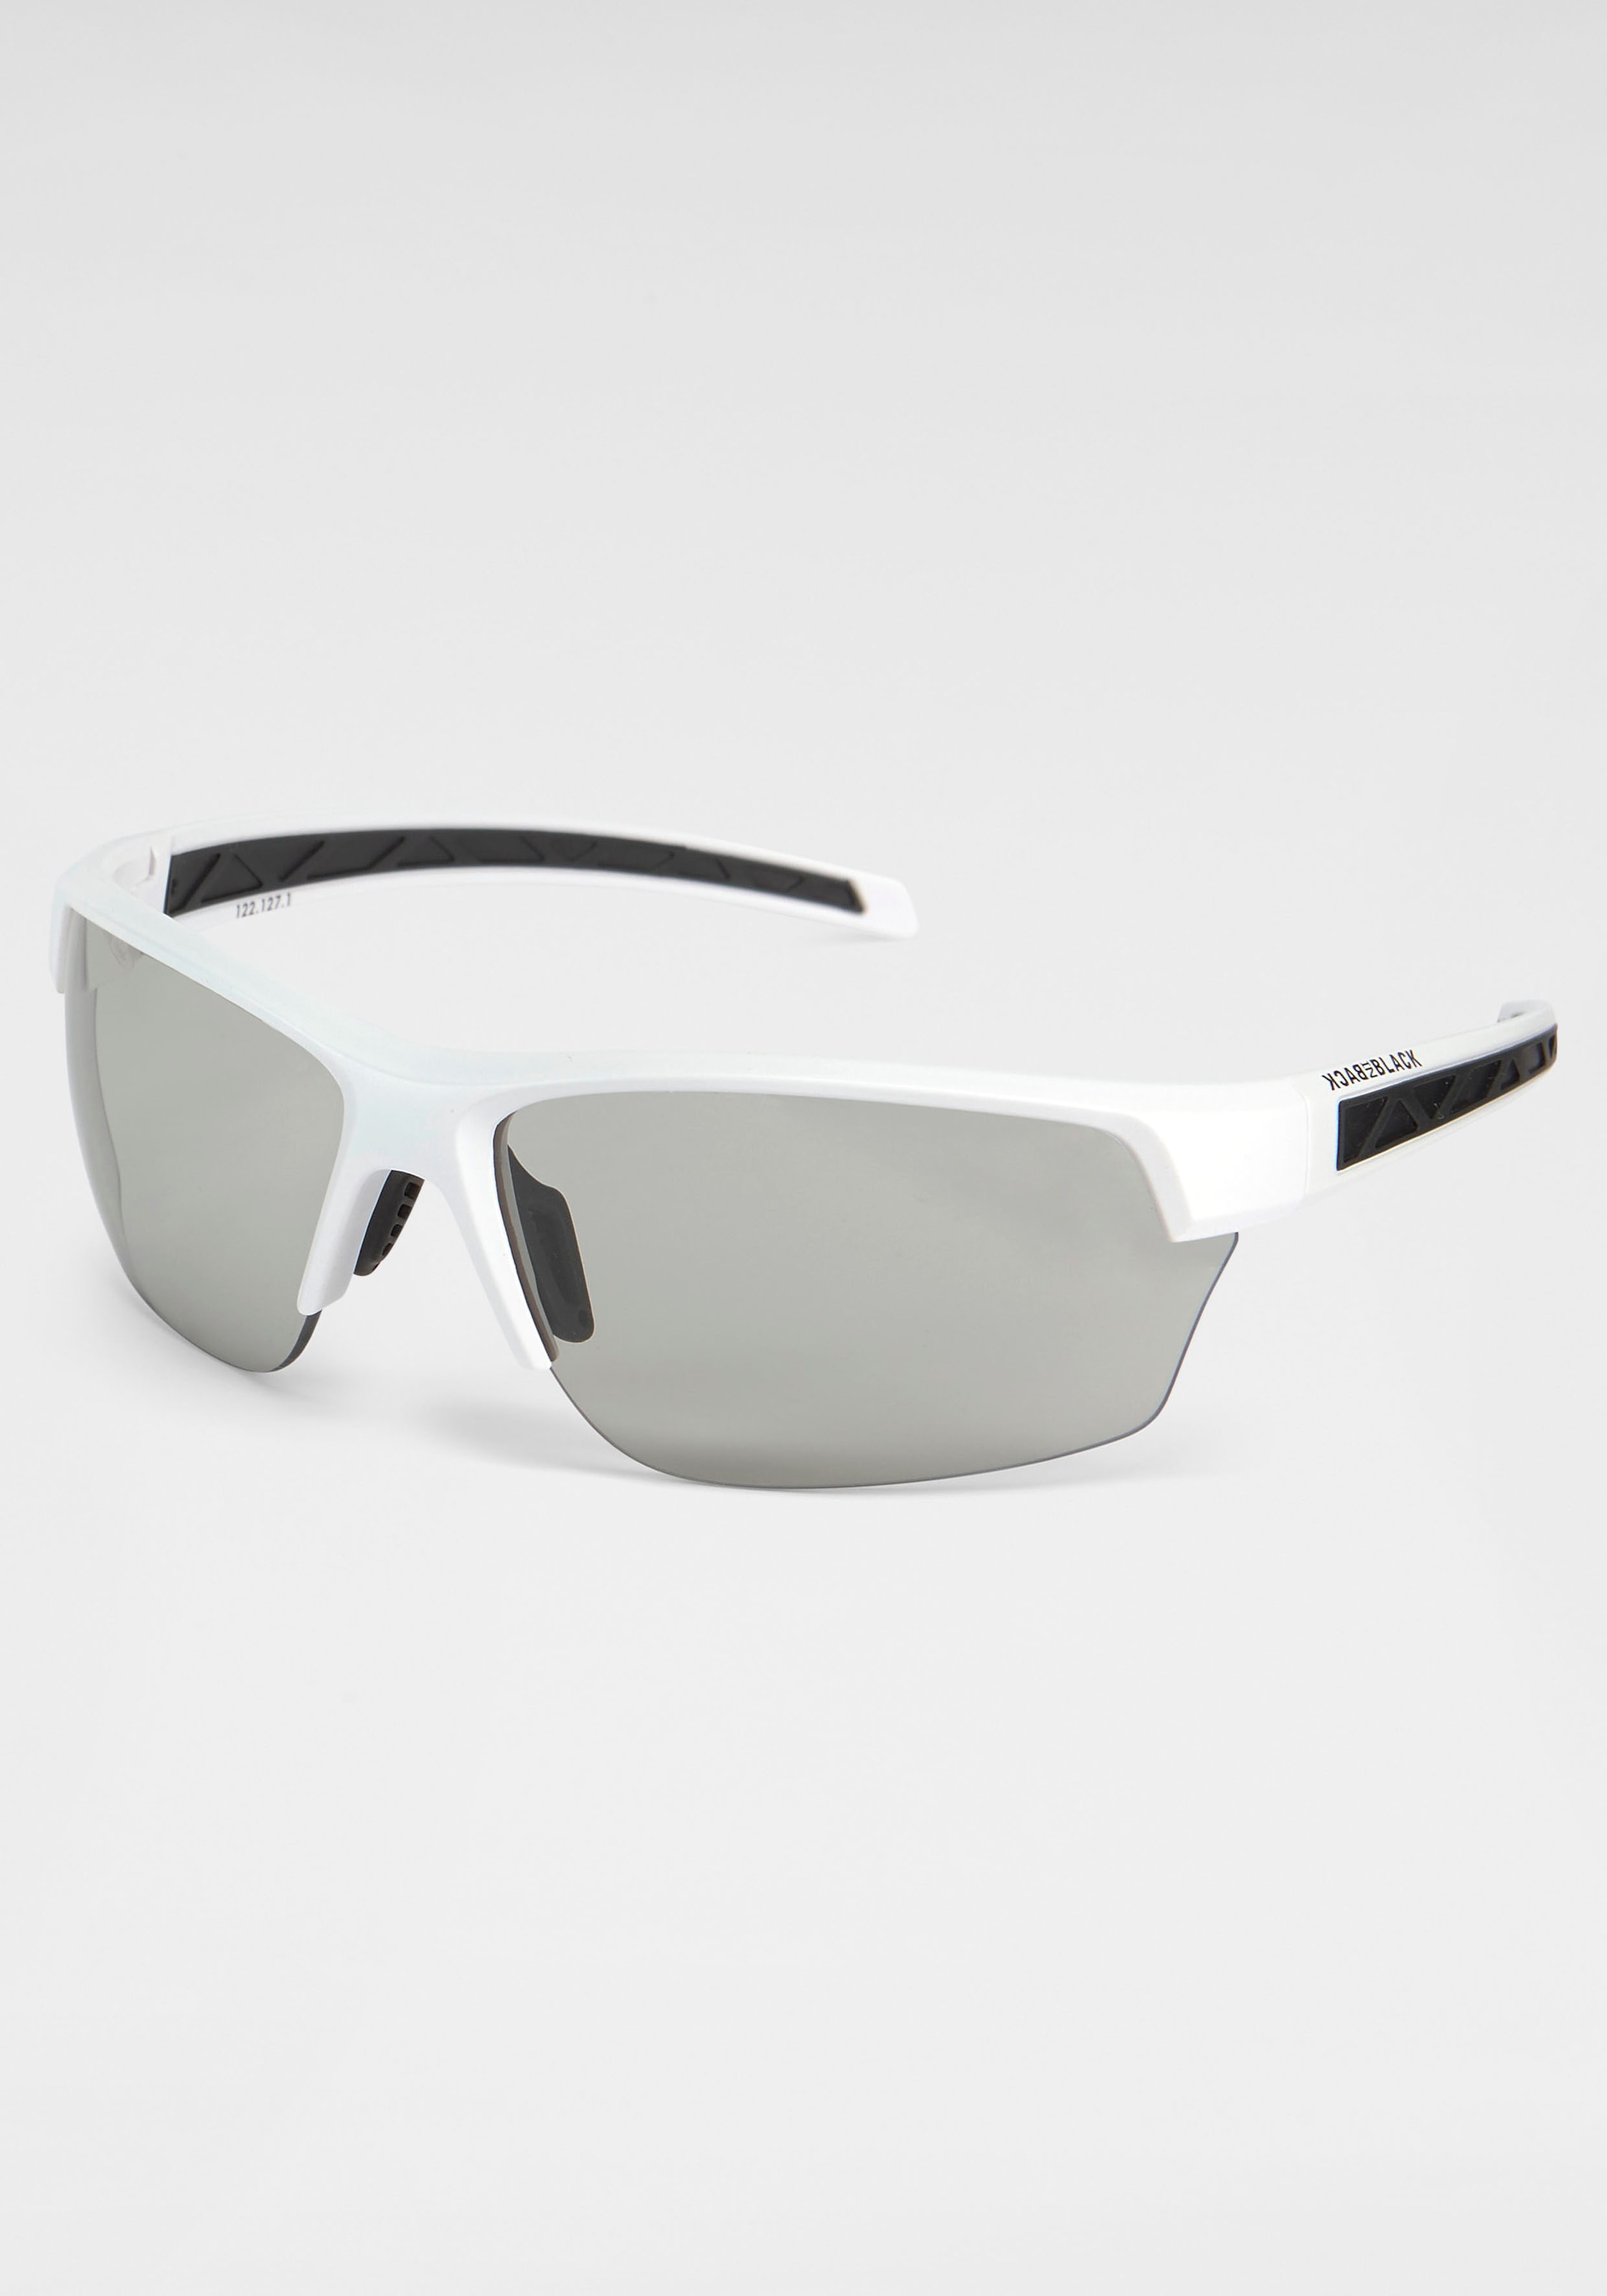 Verspiegelte Gläser BLACK IN Eyewear Sonnenbrille, bei BACK